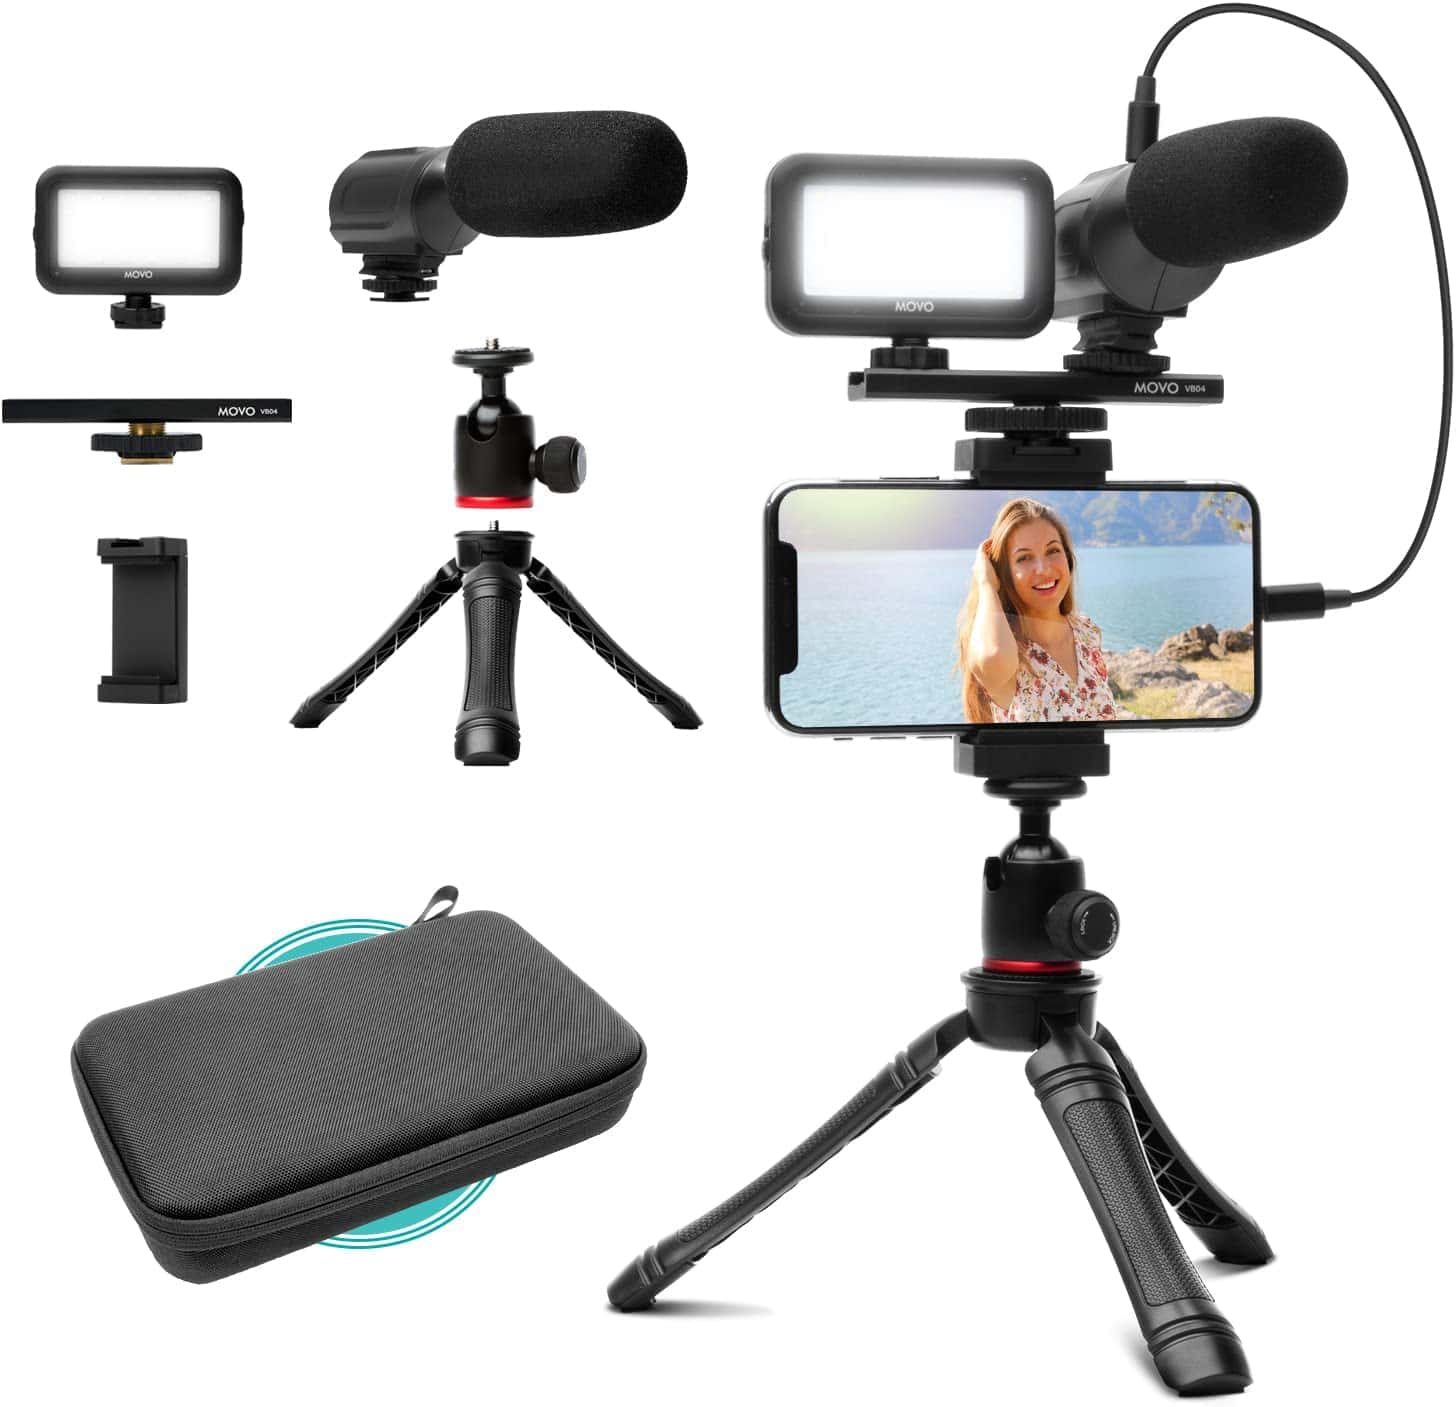 alt="Movo iVlogger Vlogging Kit for iPhone - Lightning Compatible Video Vlog Kit plus Accessories"